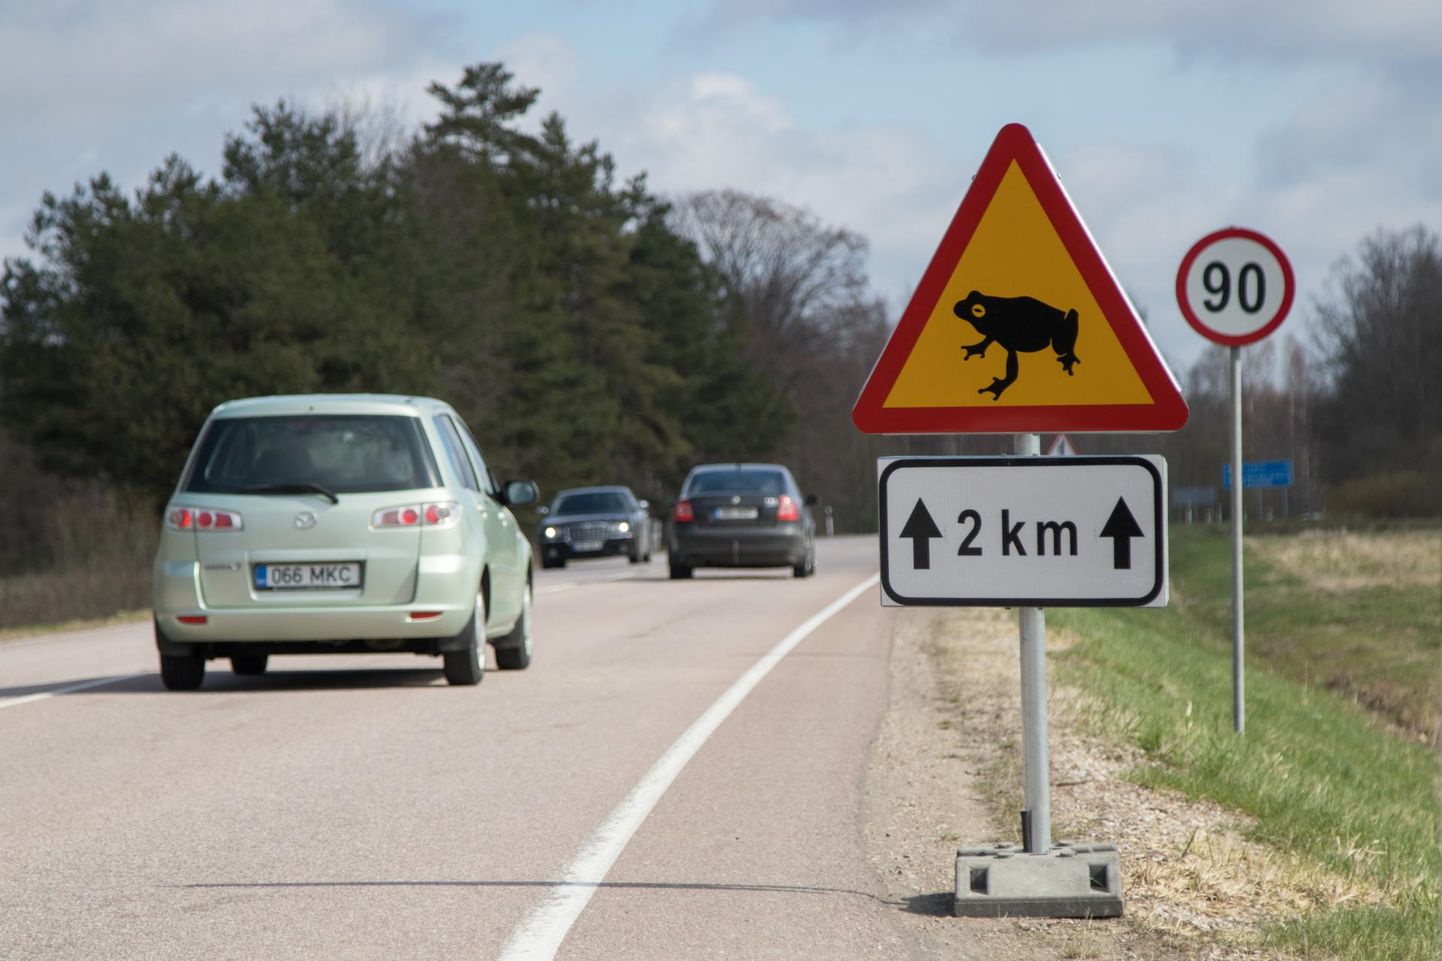 Konnatalgutest on kombeks sõidukijuhtidele liiklusmärgiga teada anda. Pilt on tehtud mullu aprillis Oiul.